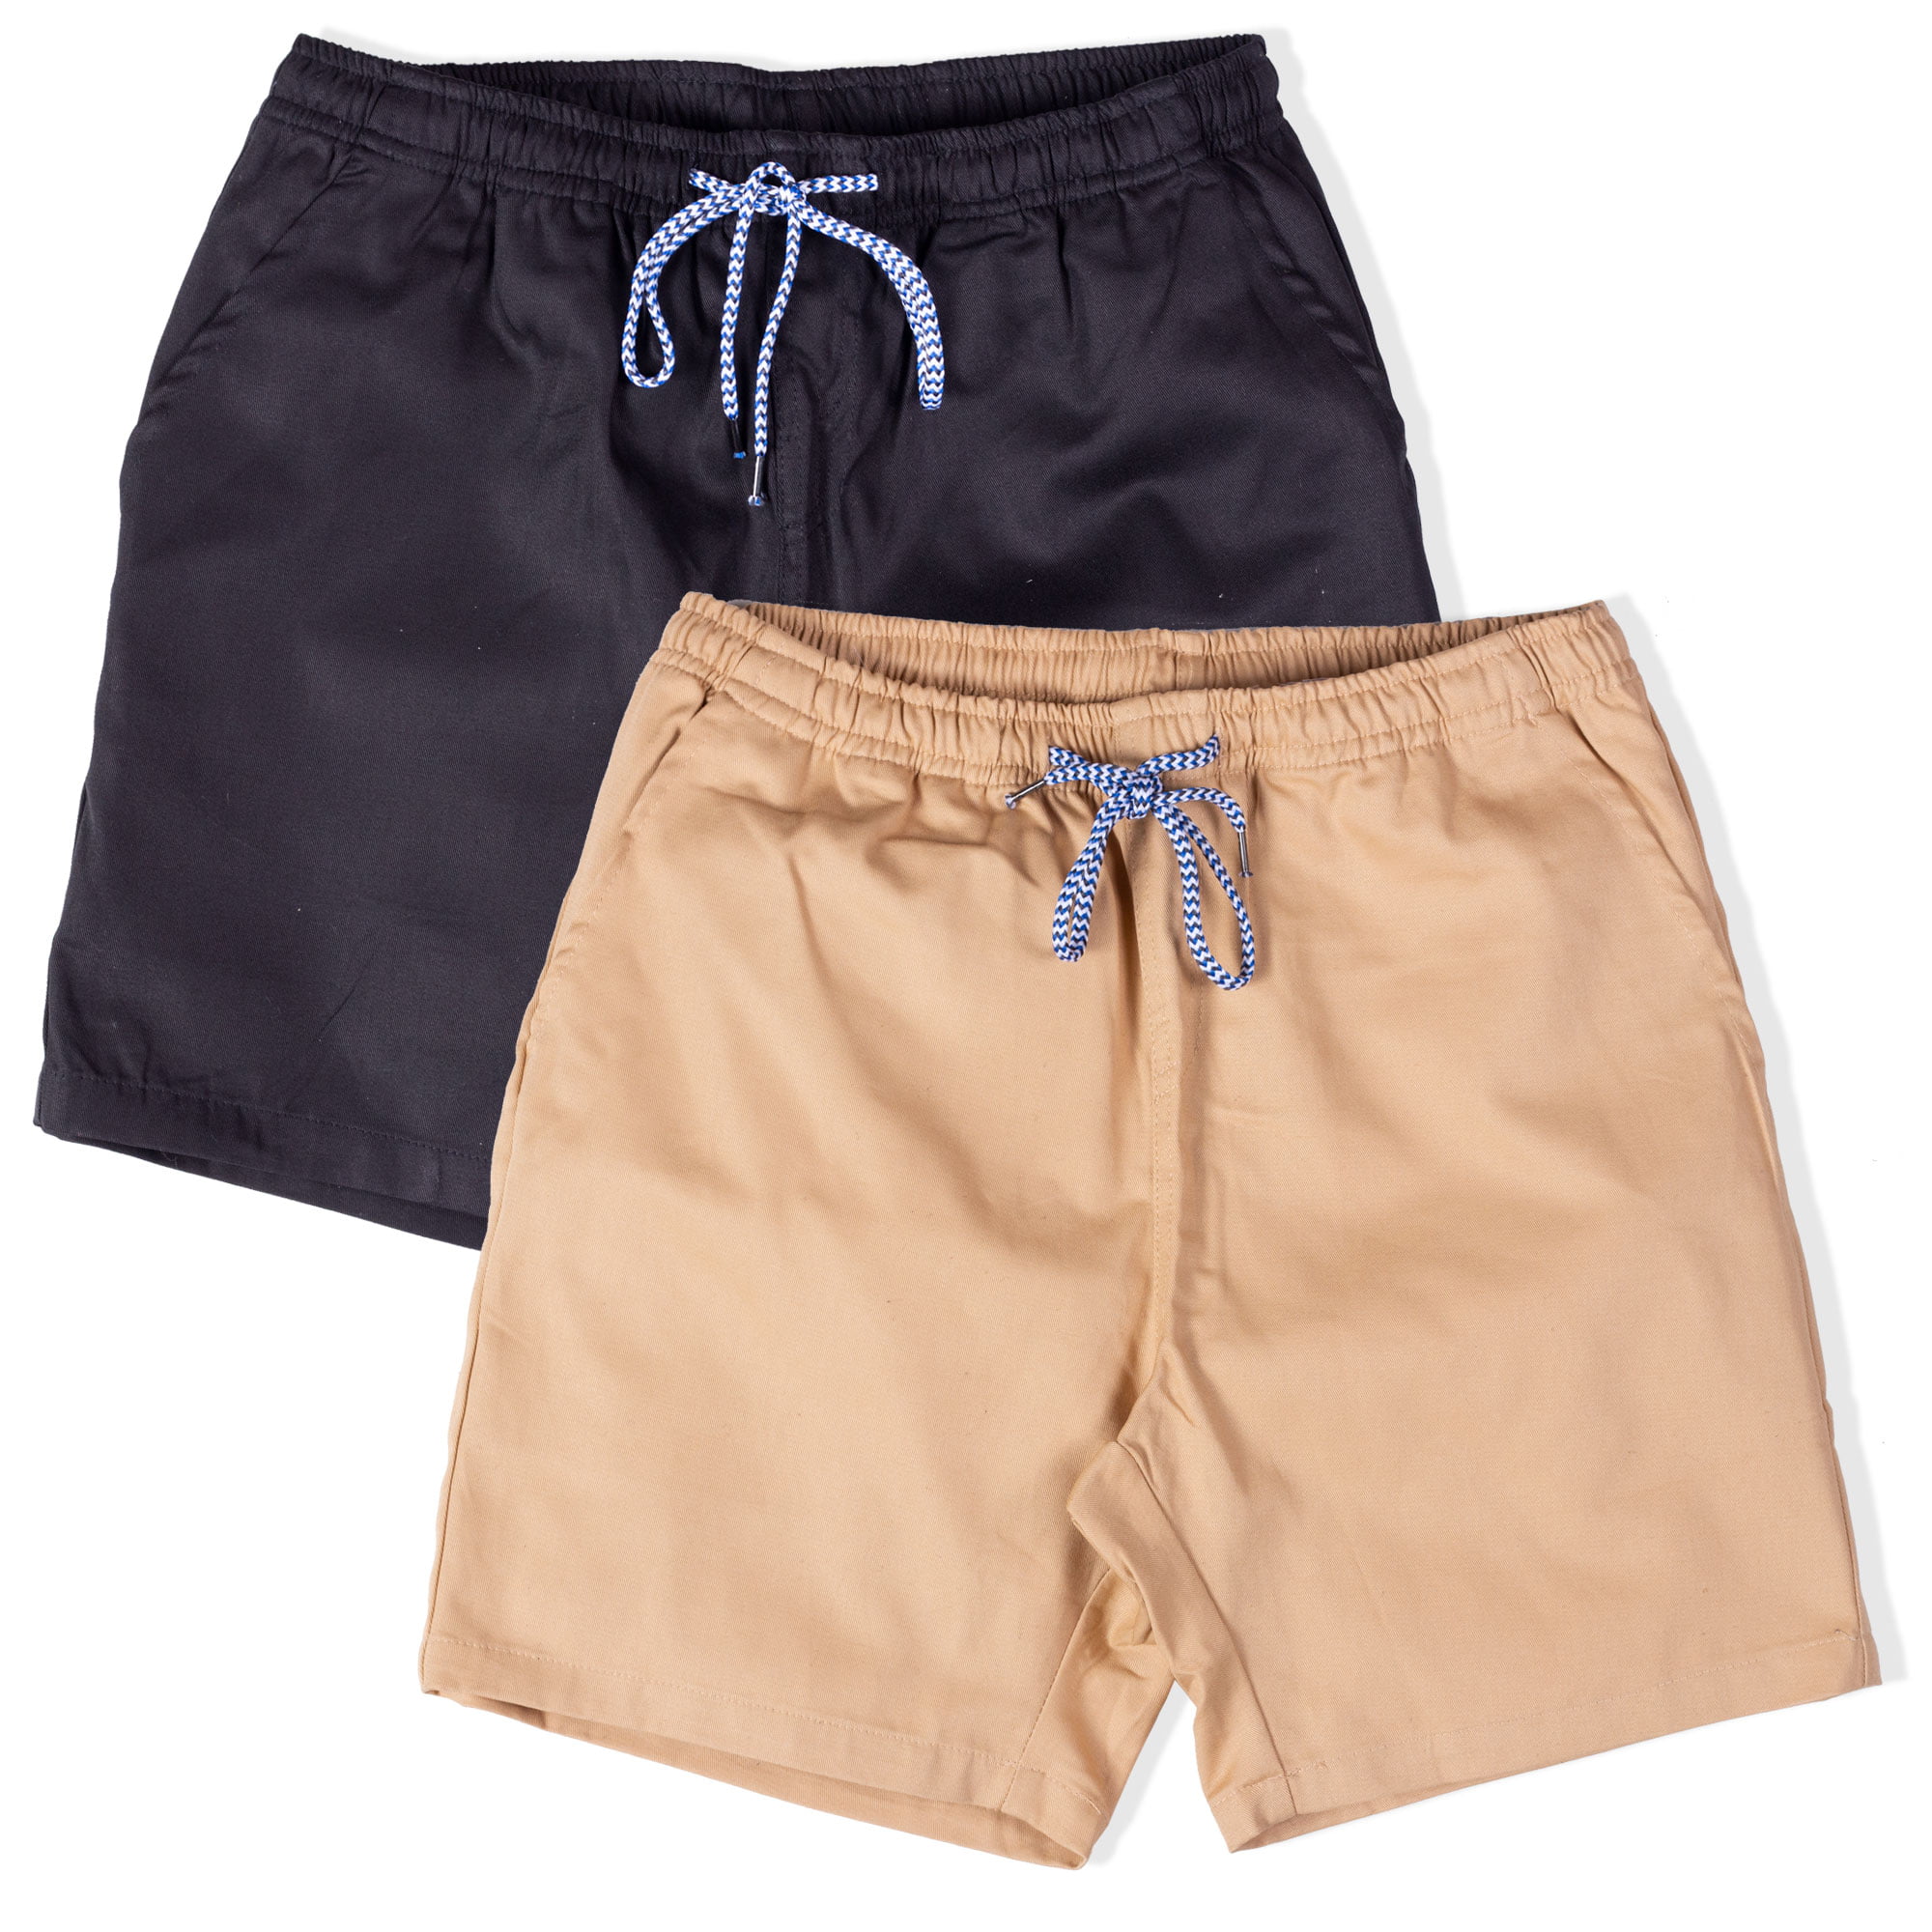 Mens Drawstring Shorts Work Casual Printed Beach Shorts Pants Trousers Athletic Shorts 